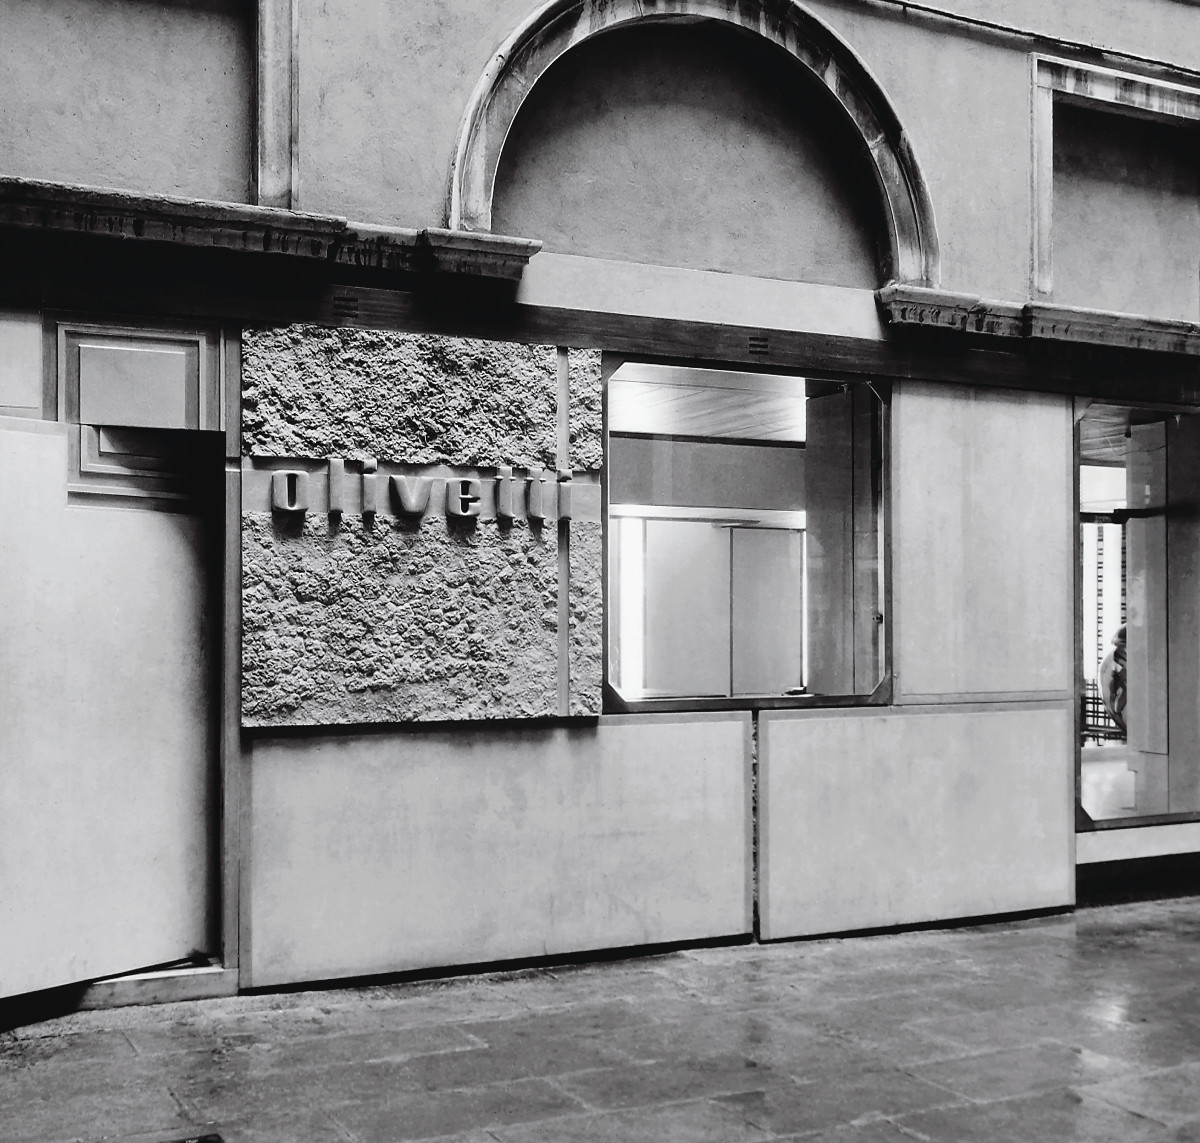 Olivetti Showroom, Piazza San Marco, Venice 1957-1958